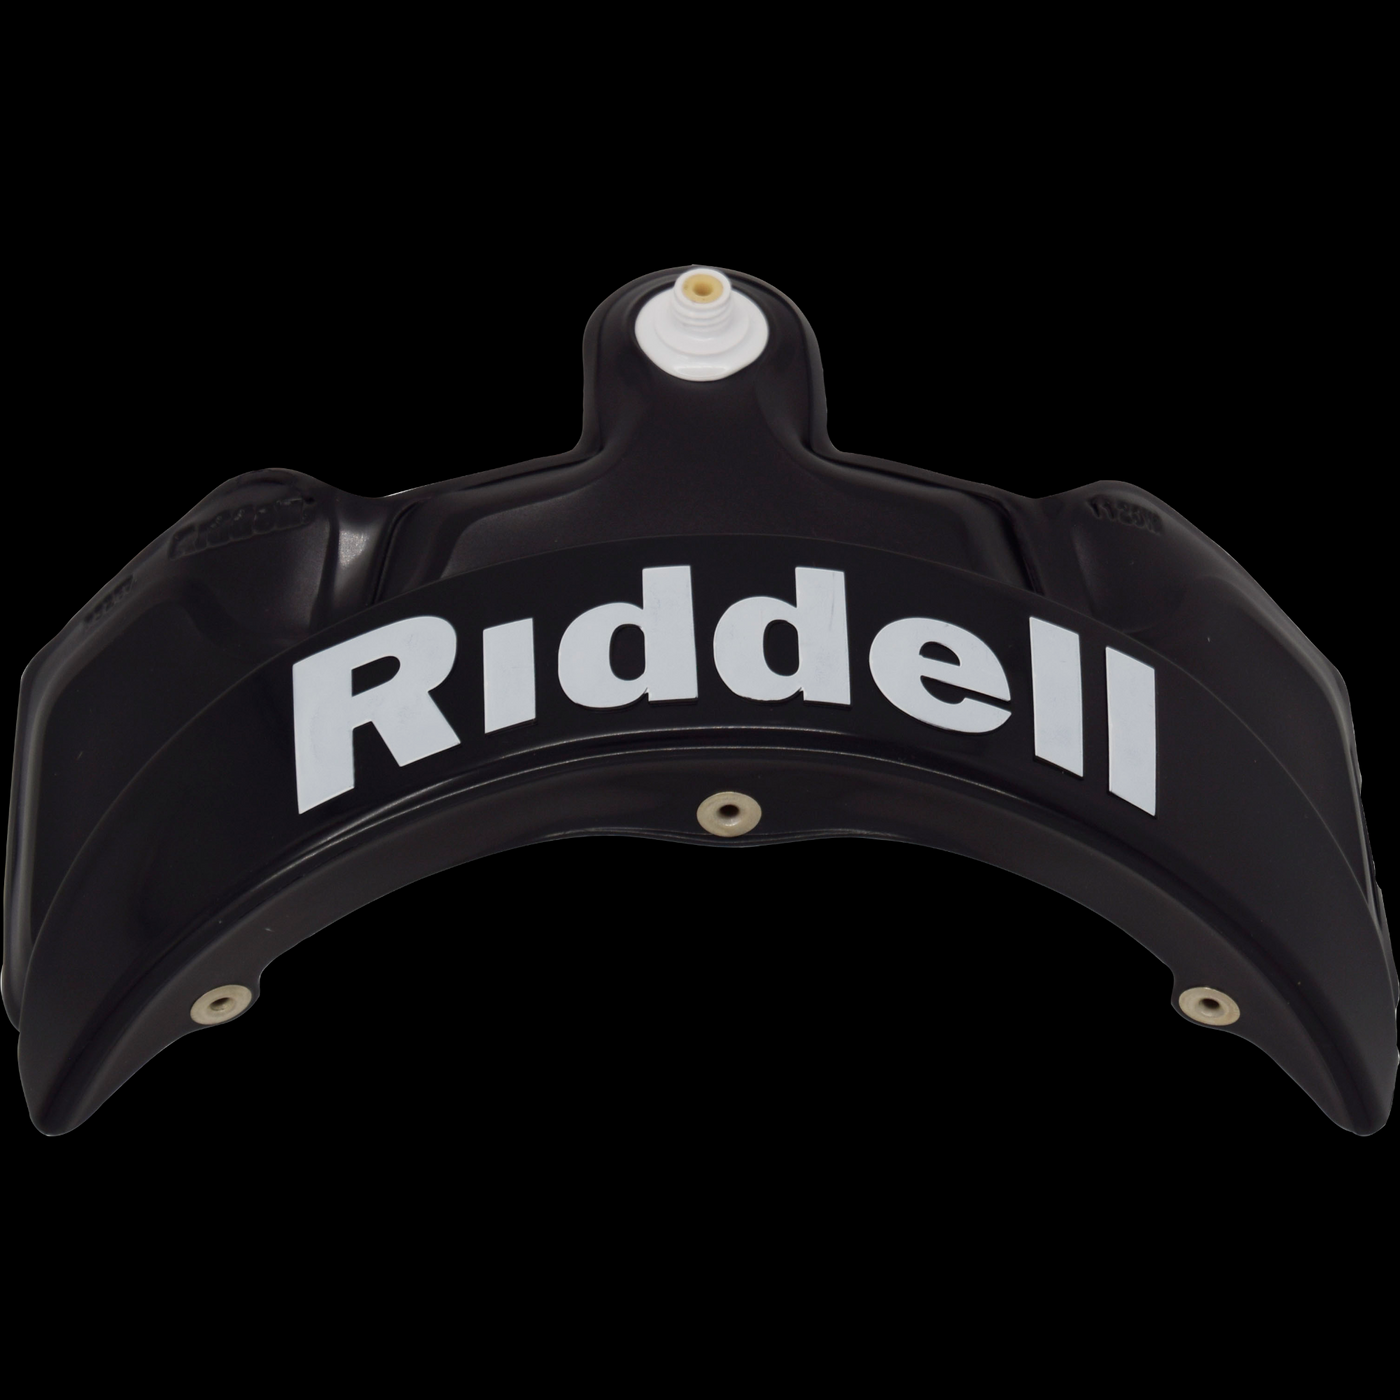 Riddell Speedflex Occipital Liner Black - Premium Helmets from Riddell - Just 899 SEK! Shop now at Reyrr Athletics